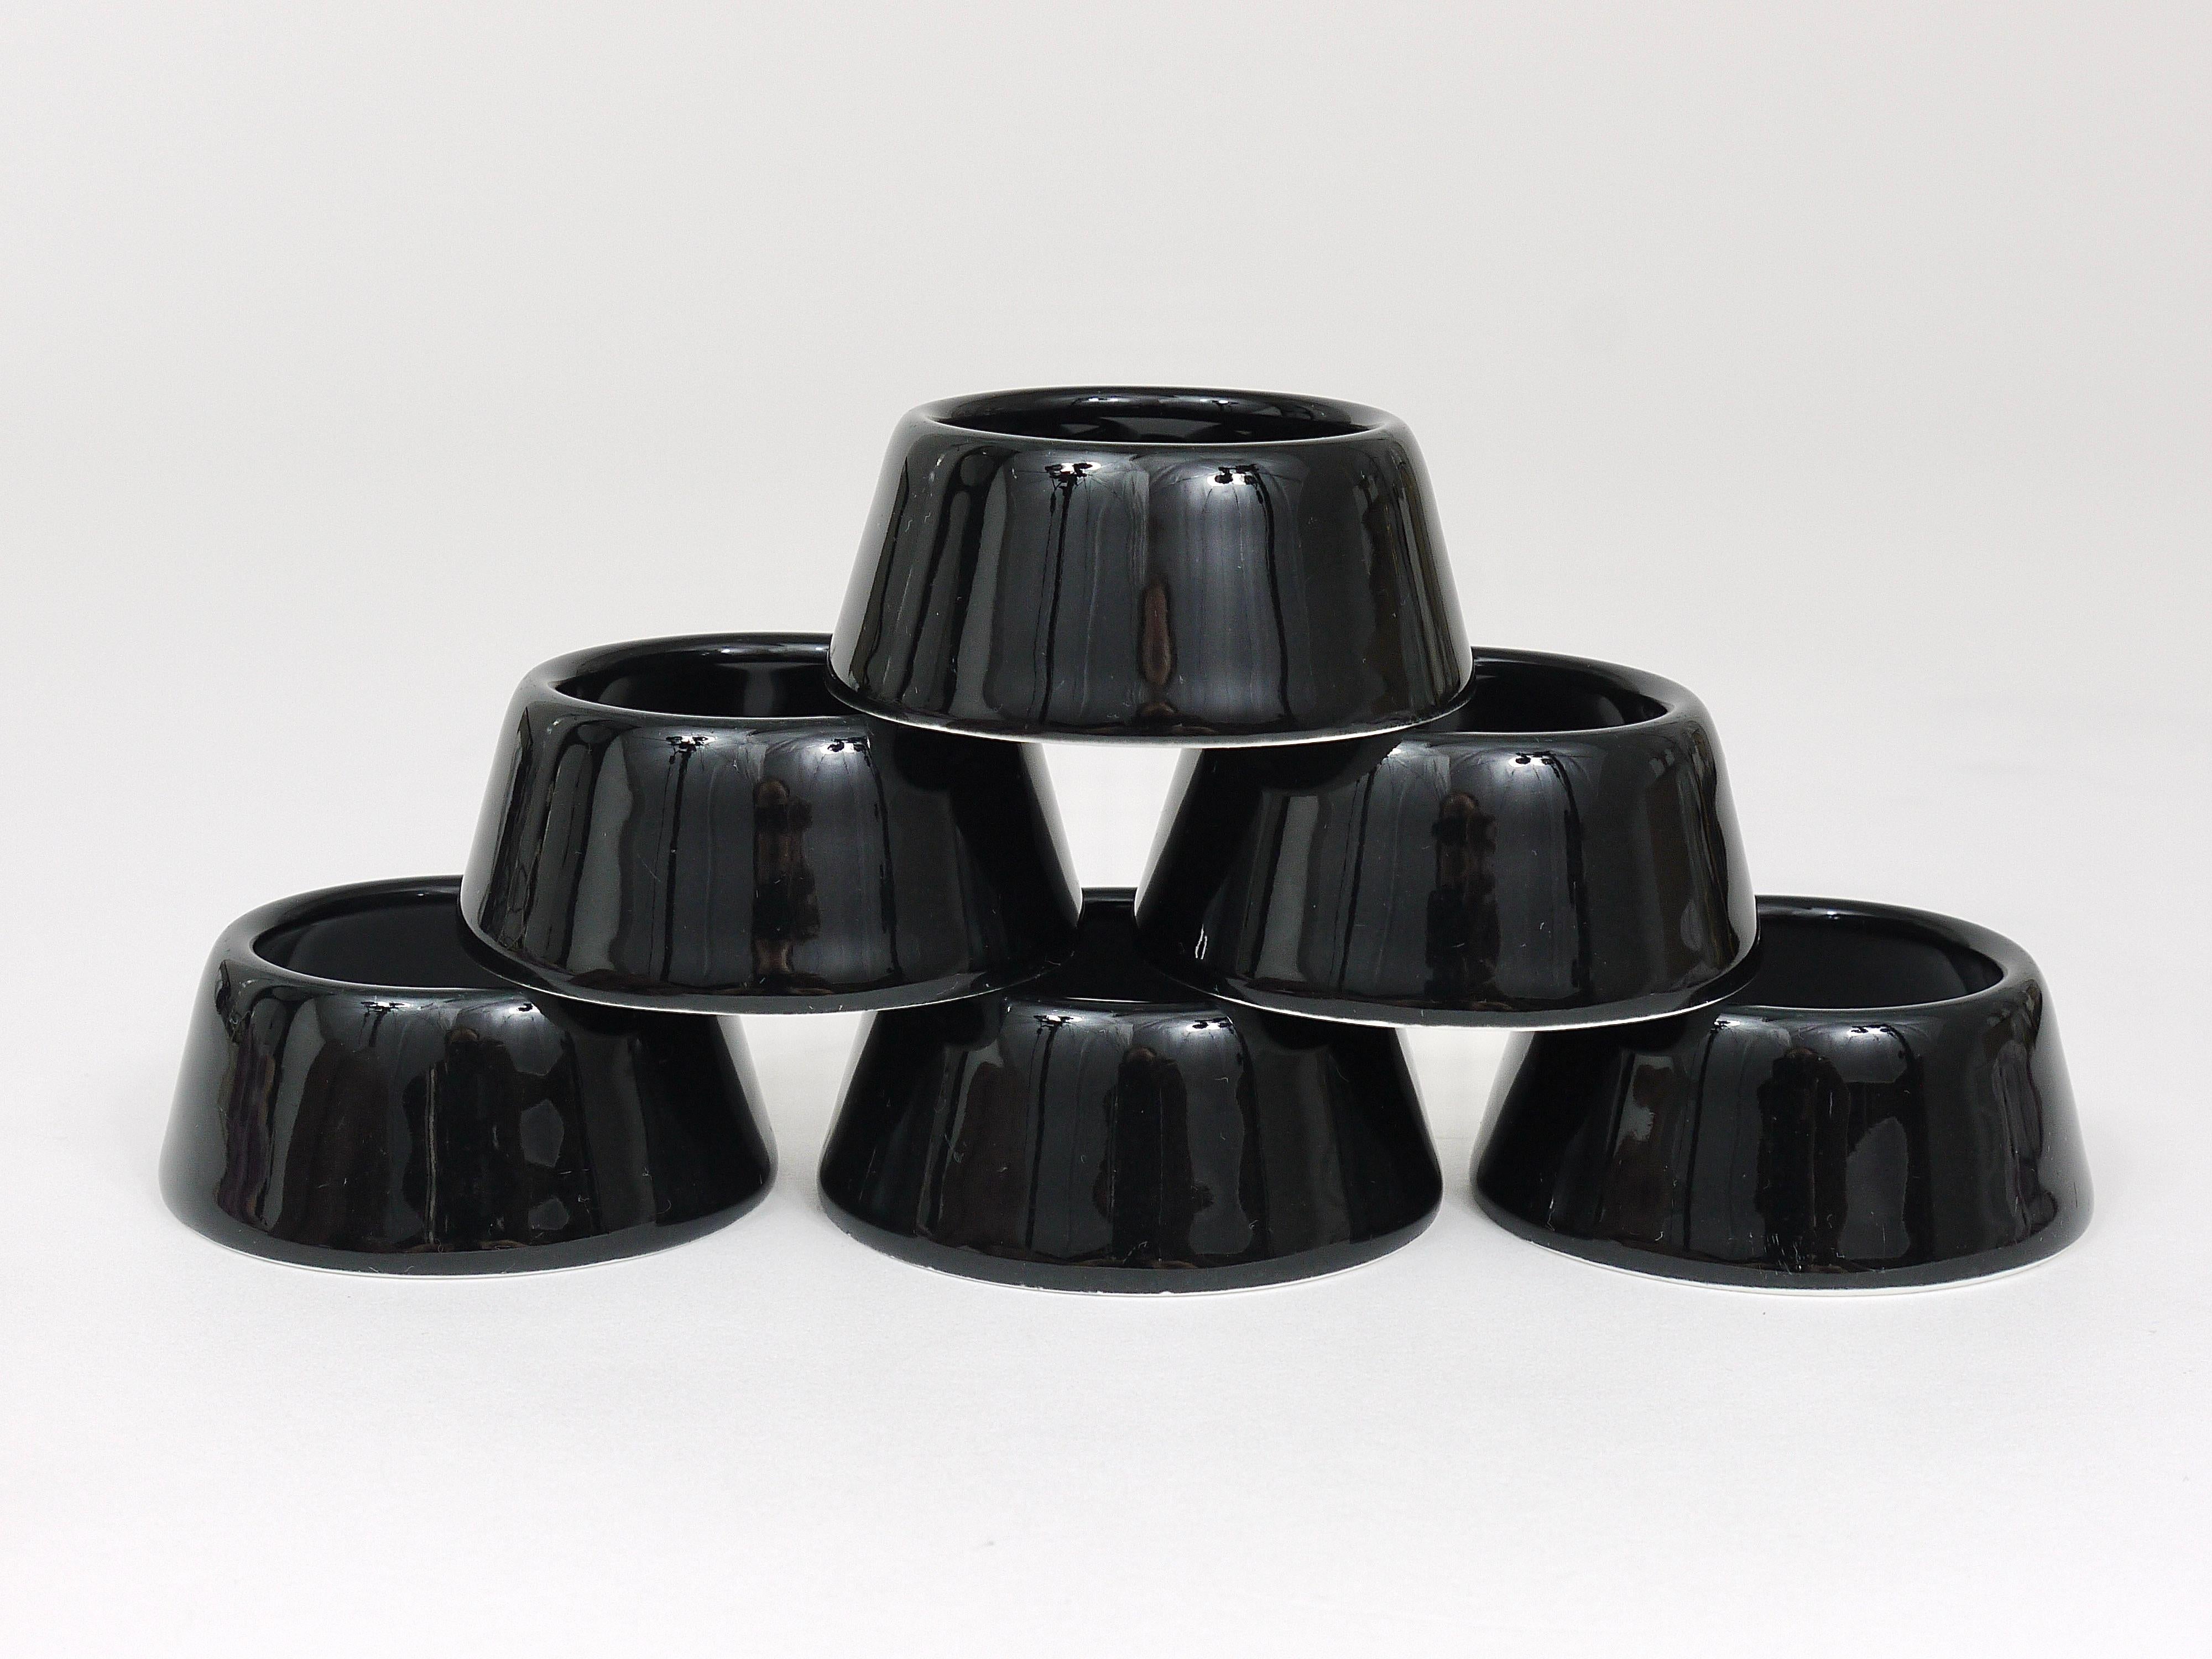 Glazed Set of Six Kaj Franck Arabia Kilta Black Ring Egg Cups, Finland, 1950s For Sale